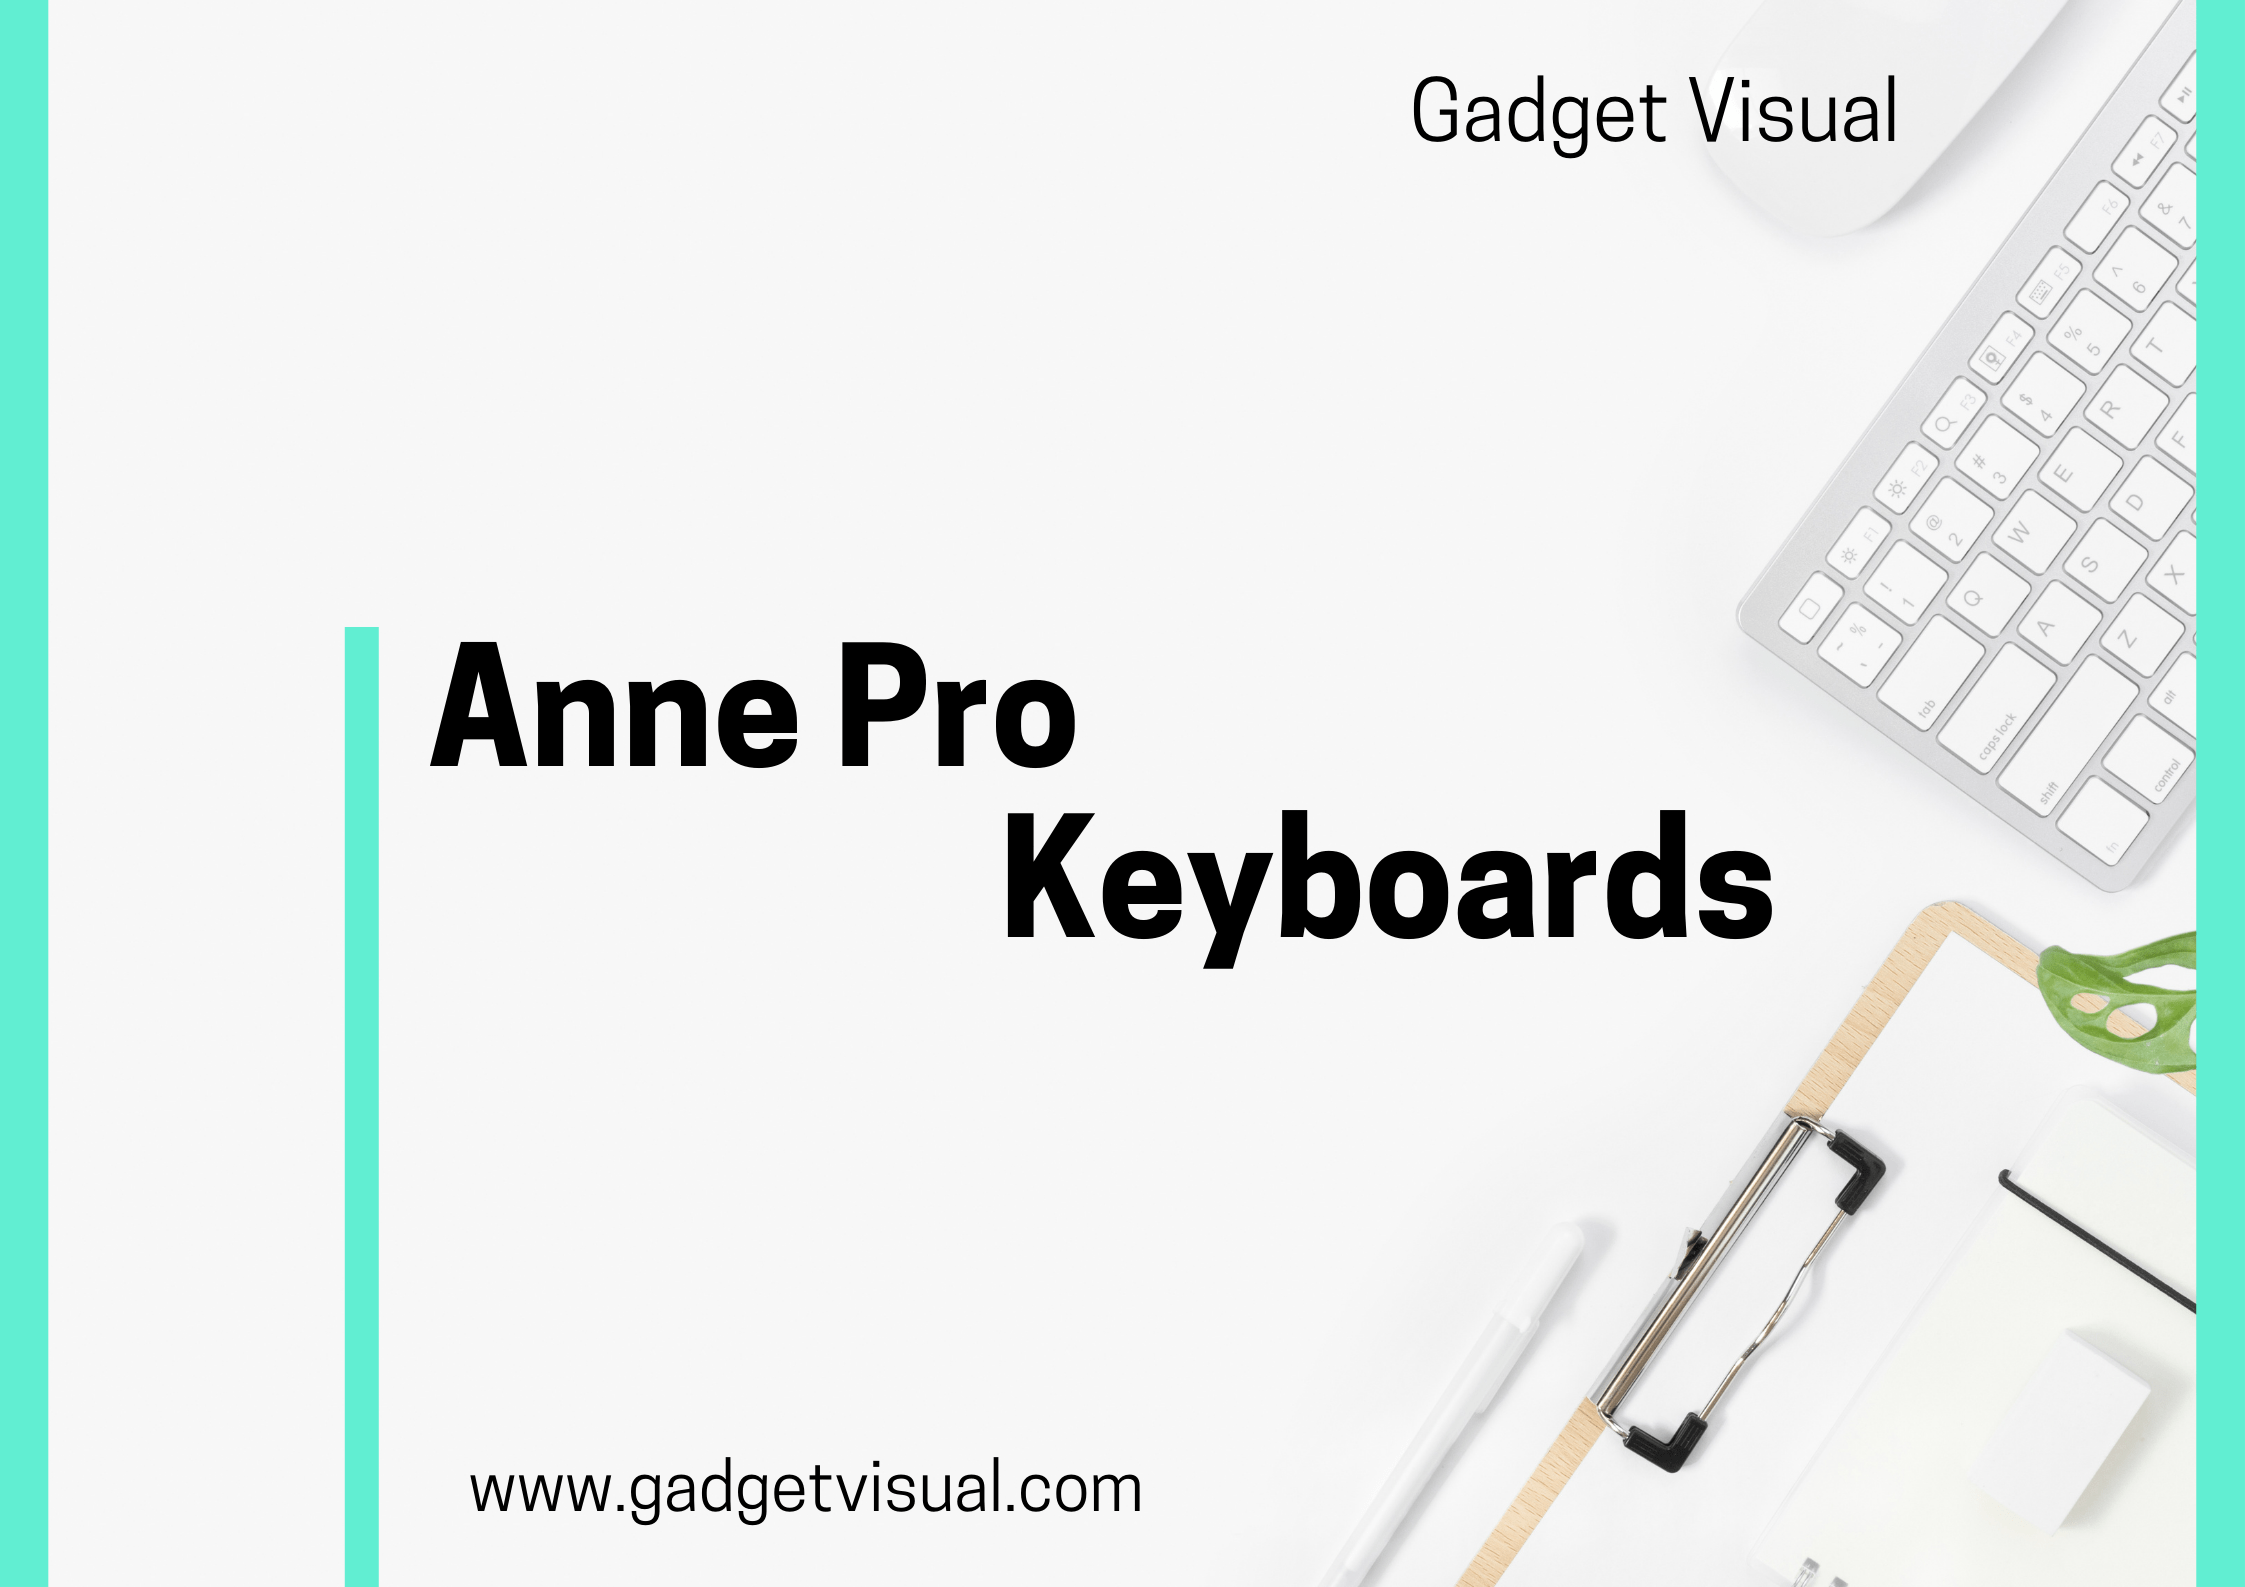 Anne Pro Keyboards